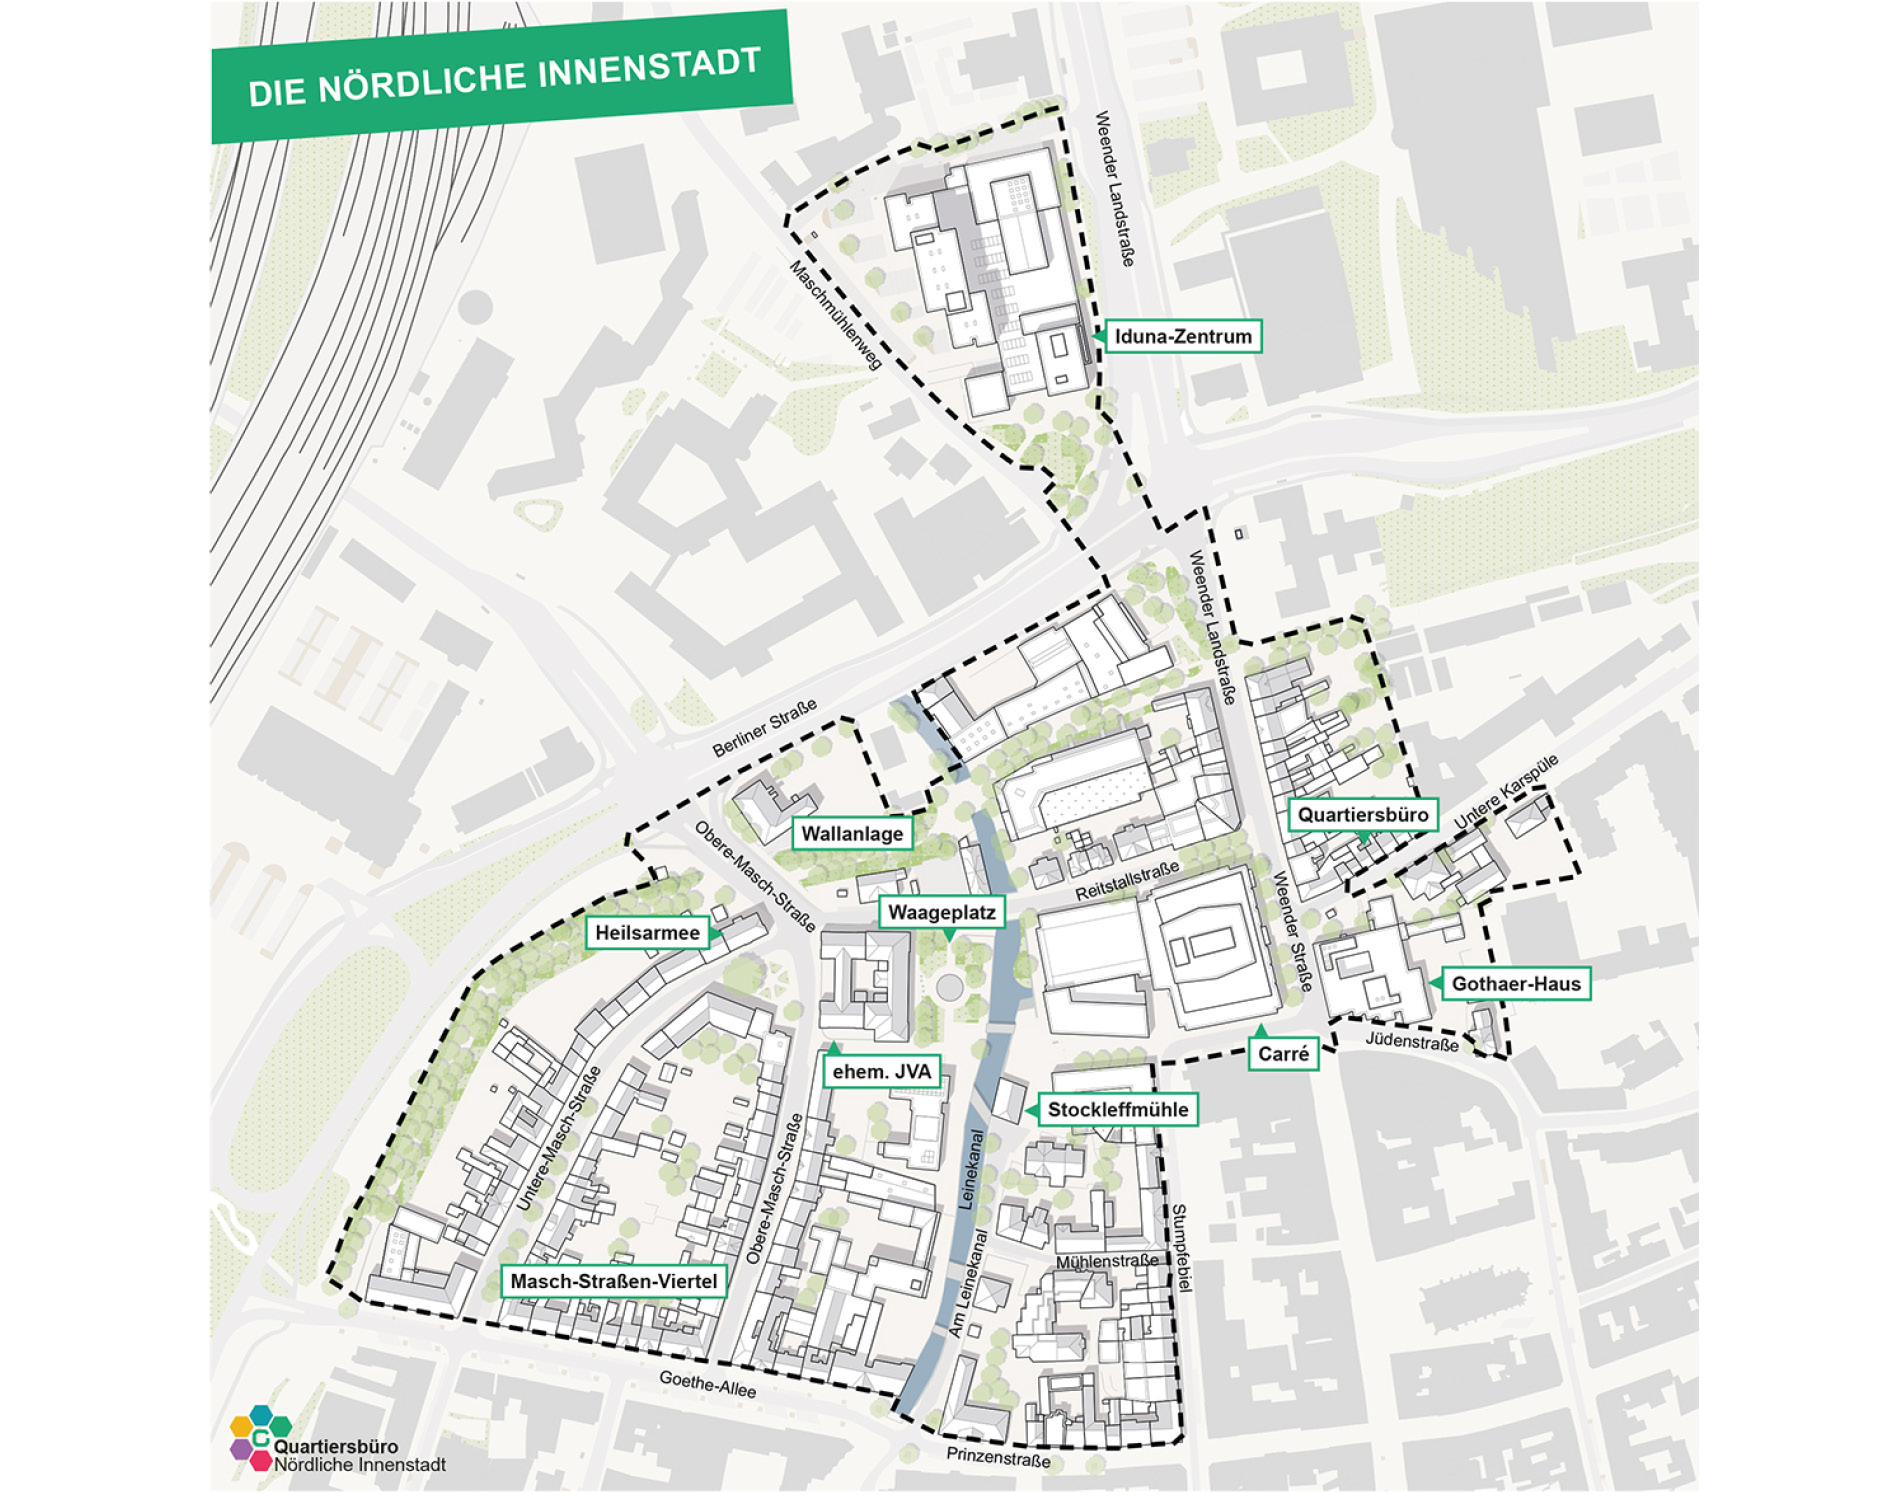 : Karte des Sanierungsgebietes in einem Überblick über die Göttinger Innenstadt. Das Sanierungsgebiet ist farblich abgegrenzt und einzelne Immobilien und Straßenzüge extra benannt.